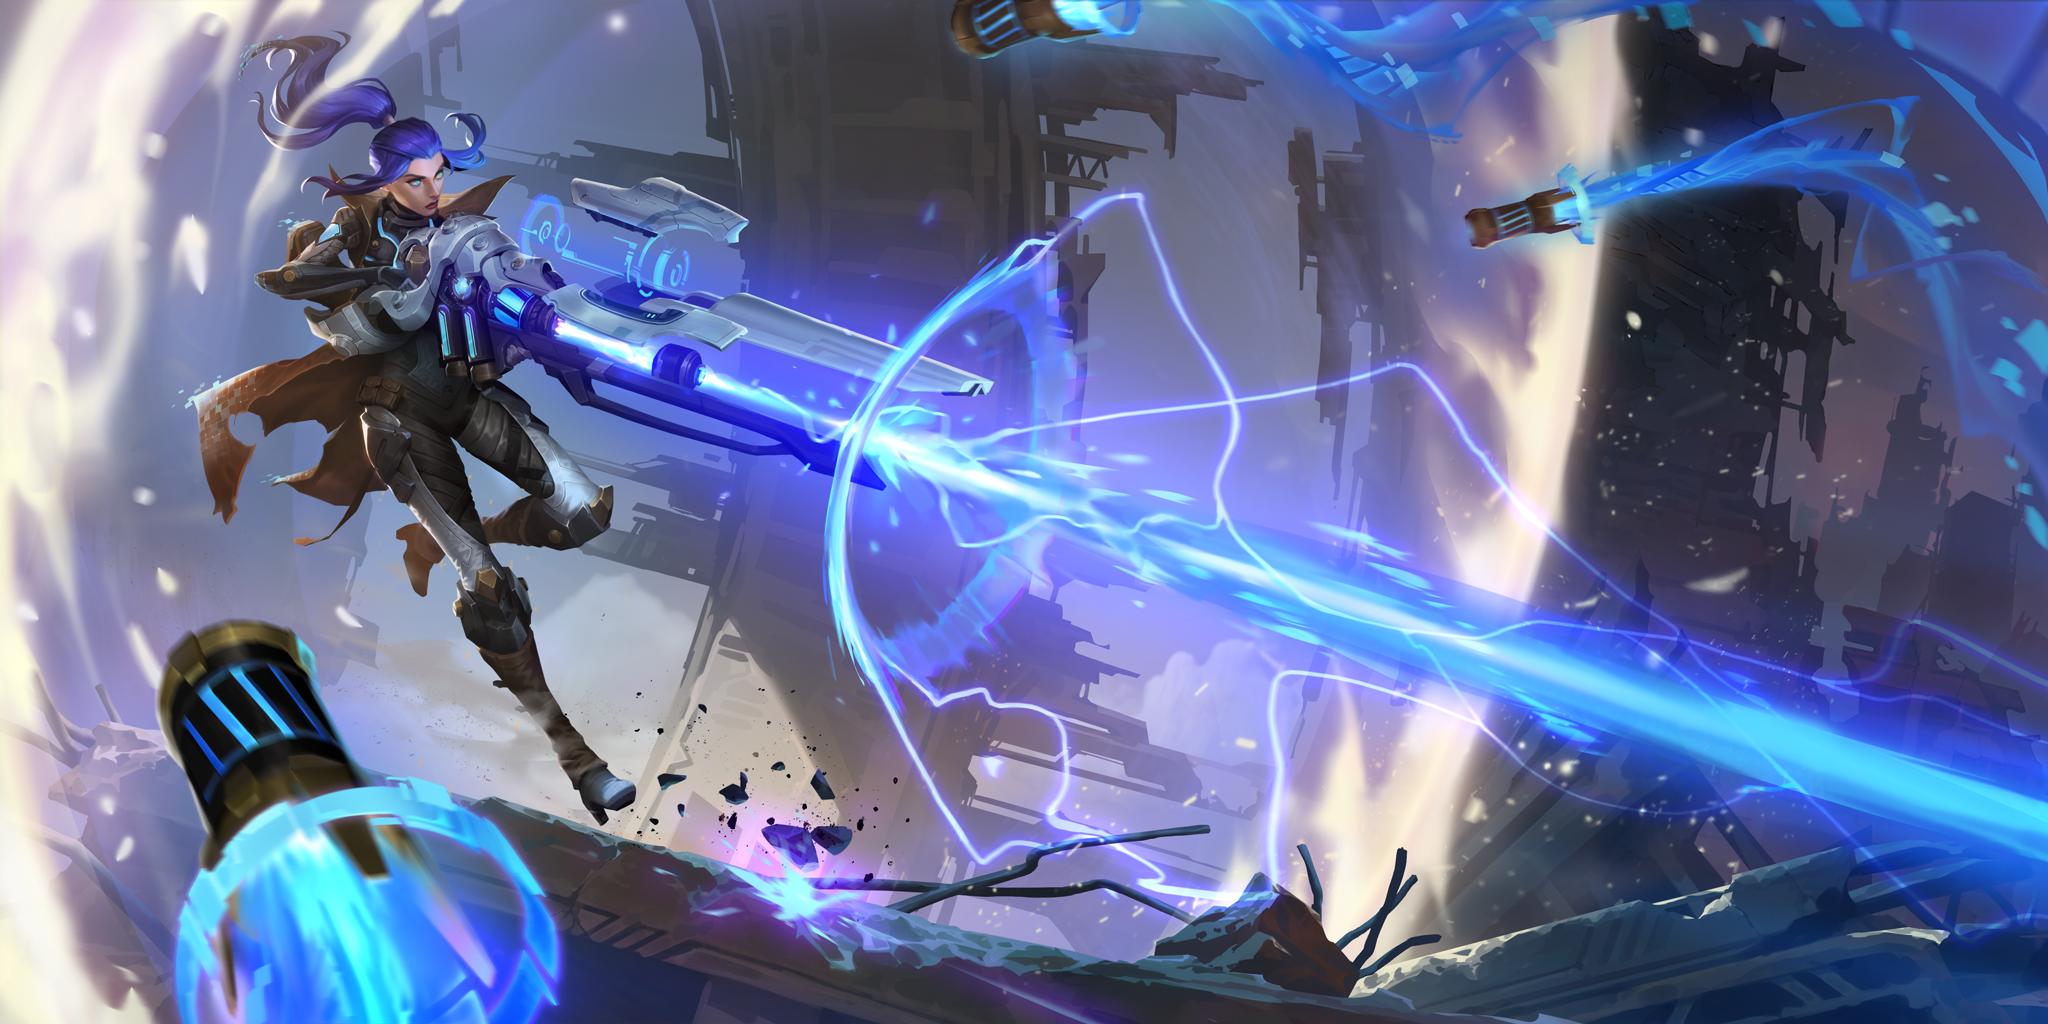 Supporto giocatori di Legends of Runeterra - Caitlyn Pulsefire che spara un raggio di energia da un grosso fucile mentre dei missili sono diretti verso di lei.